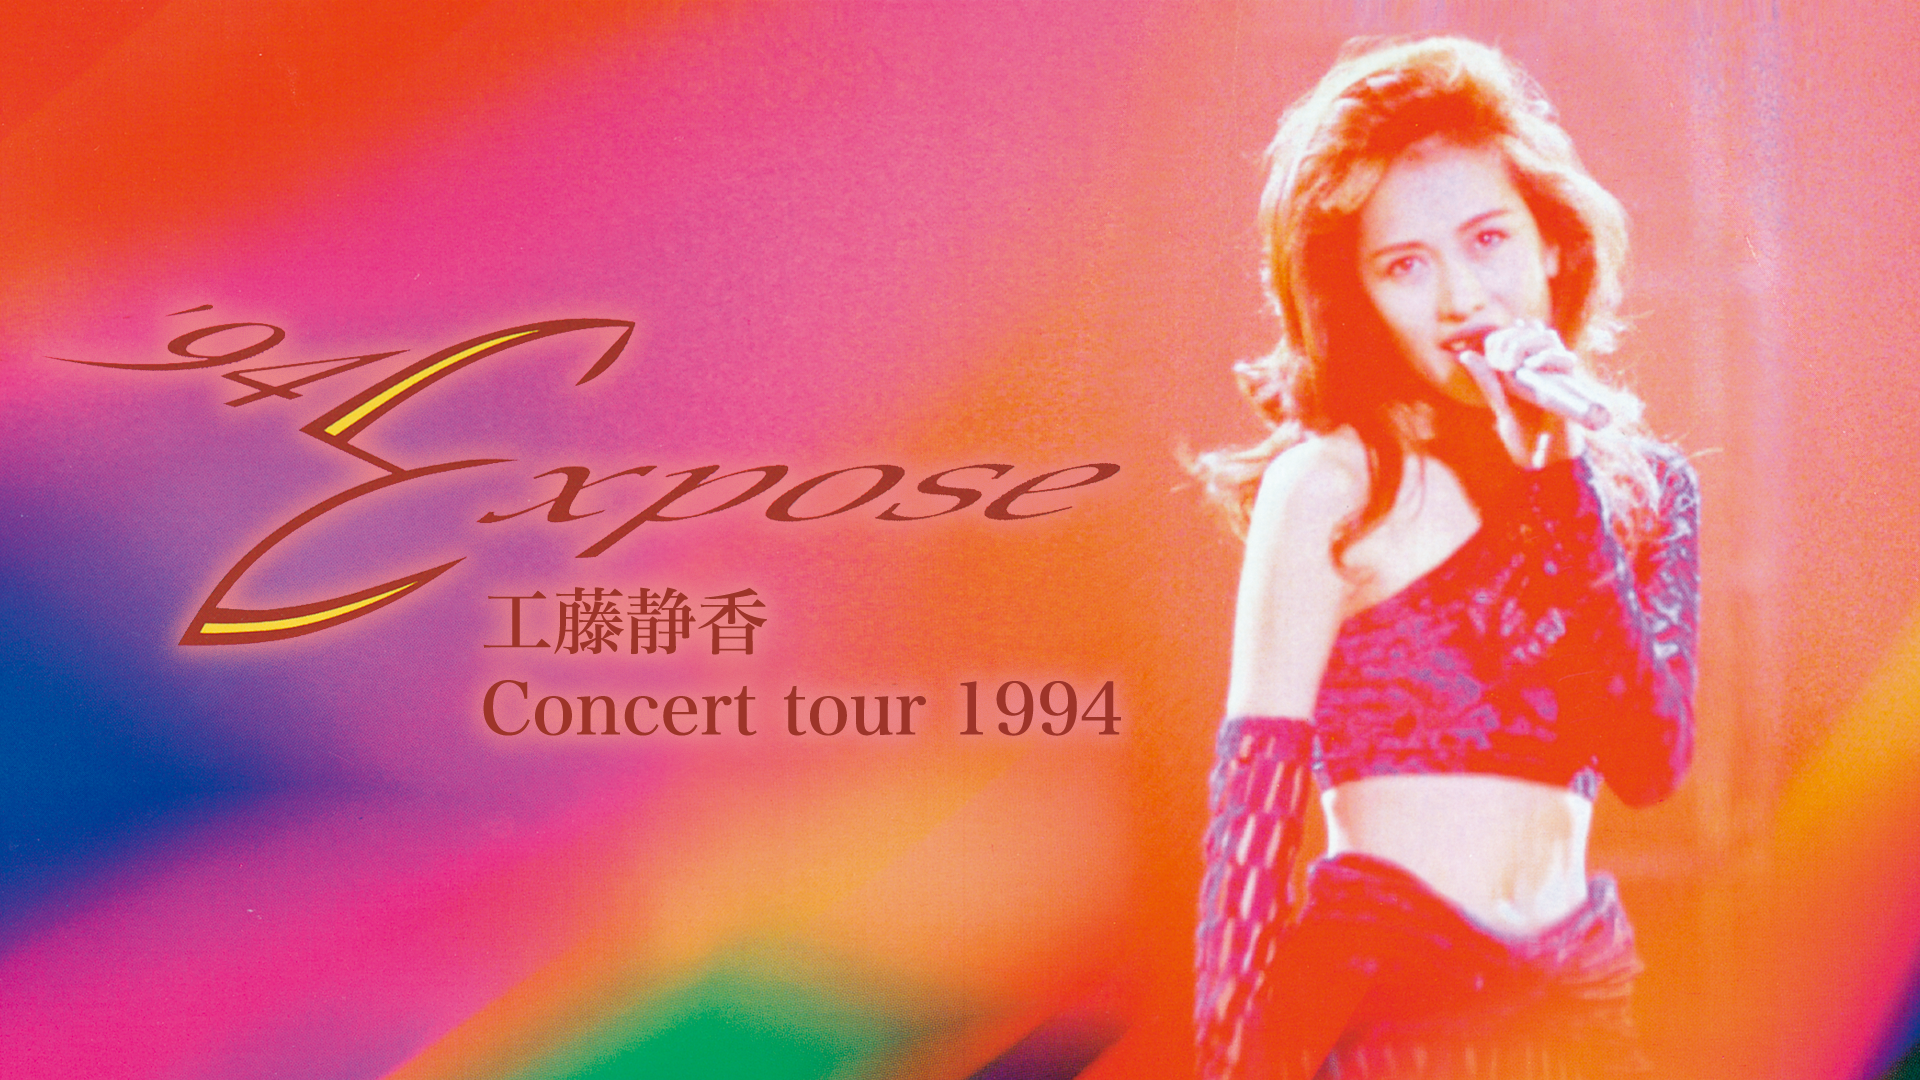 工藤静香 '94 Expose Concert tour 1994(音楽・アイドル / 1995 